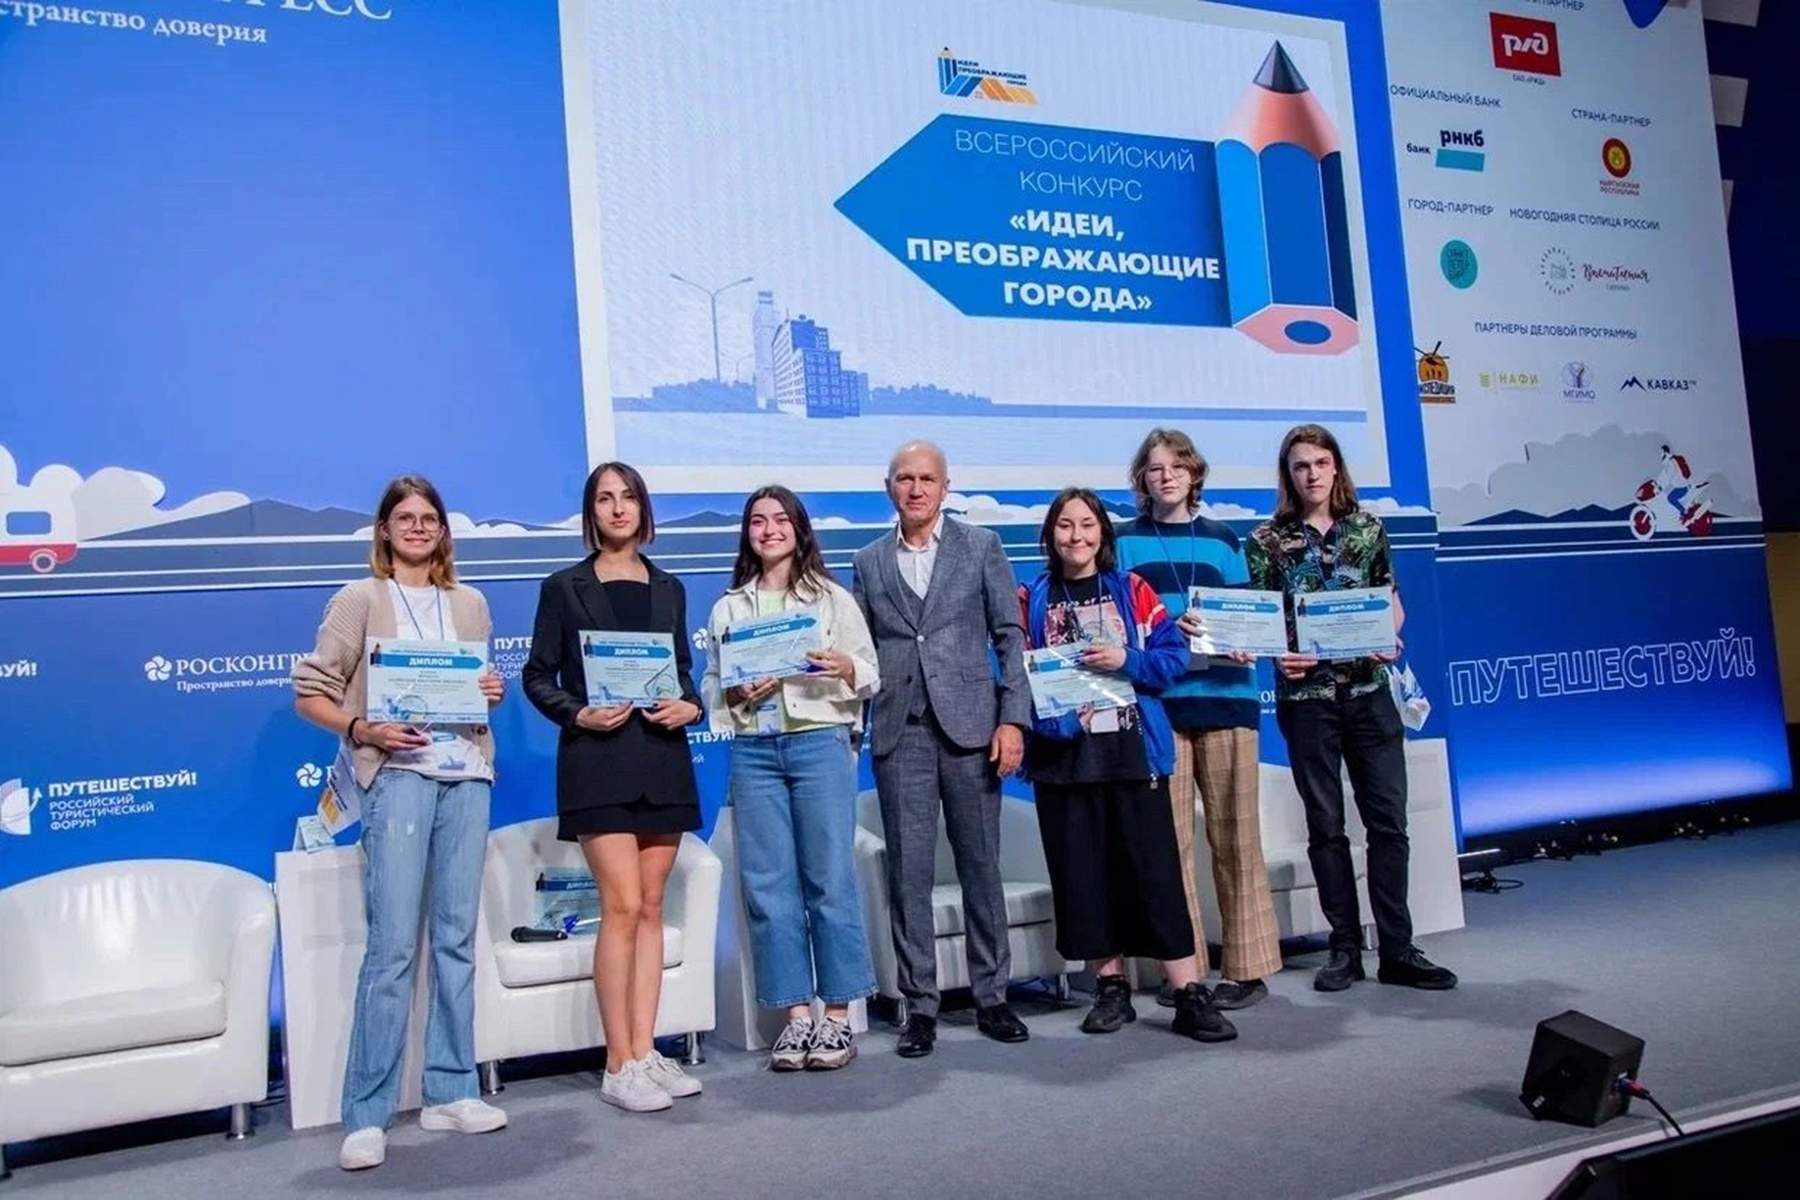 Проект студентов ВВГУ стал призером Всероссийского конкурса «Идеи, преображающие города»